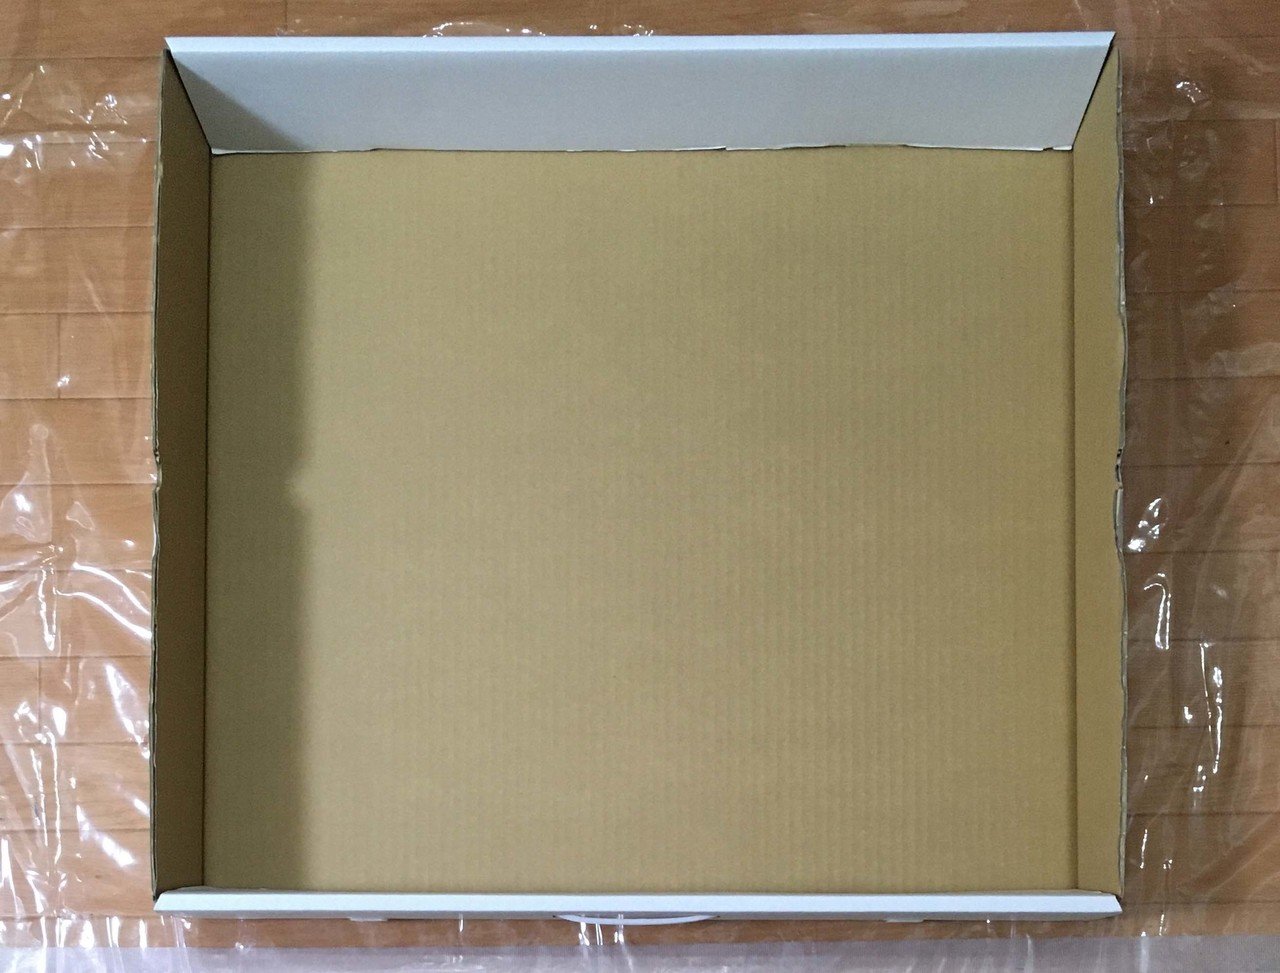 ヤマト運輸の絵画専用郵送箱 アートボックス を使ってみた 近澤優 アーティスト 絵画 Note